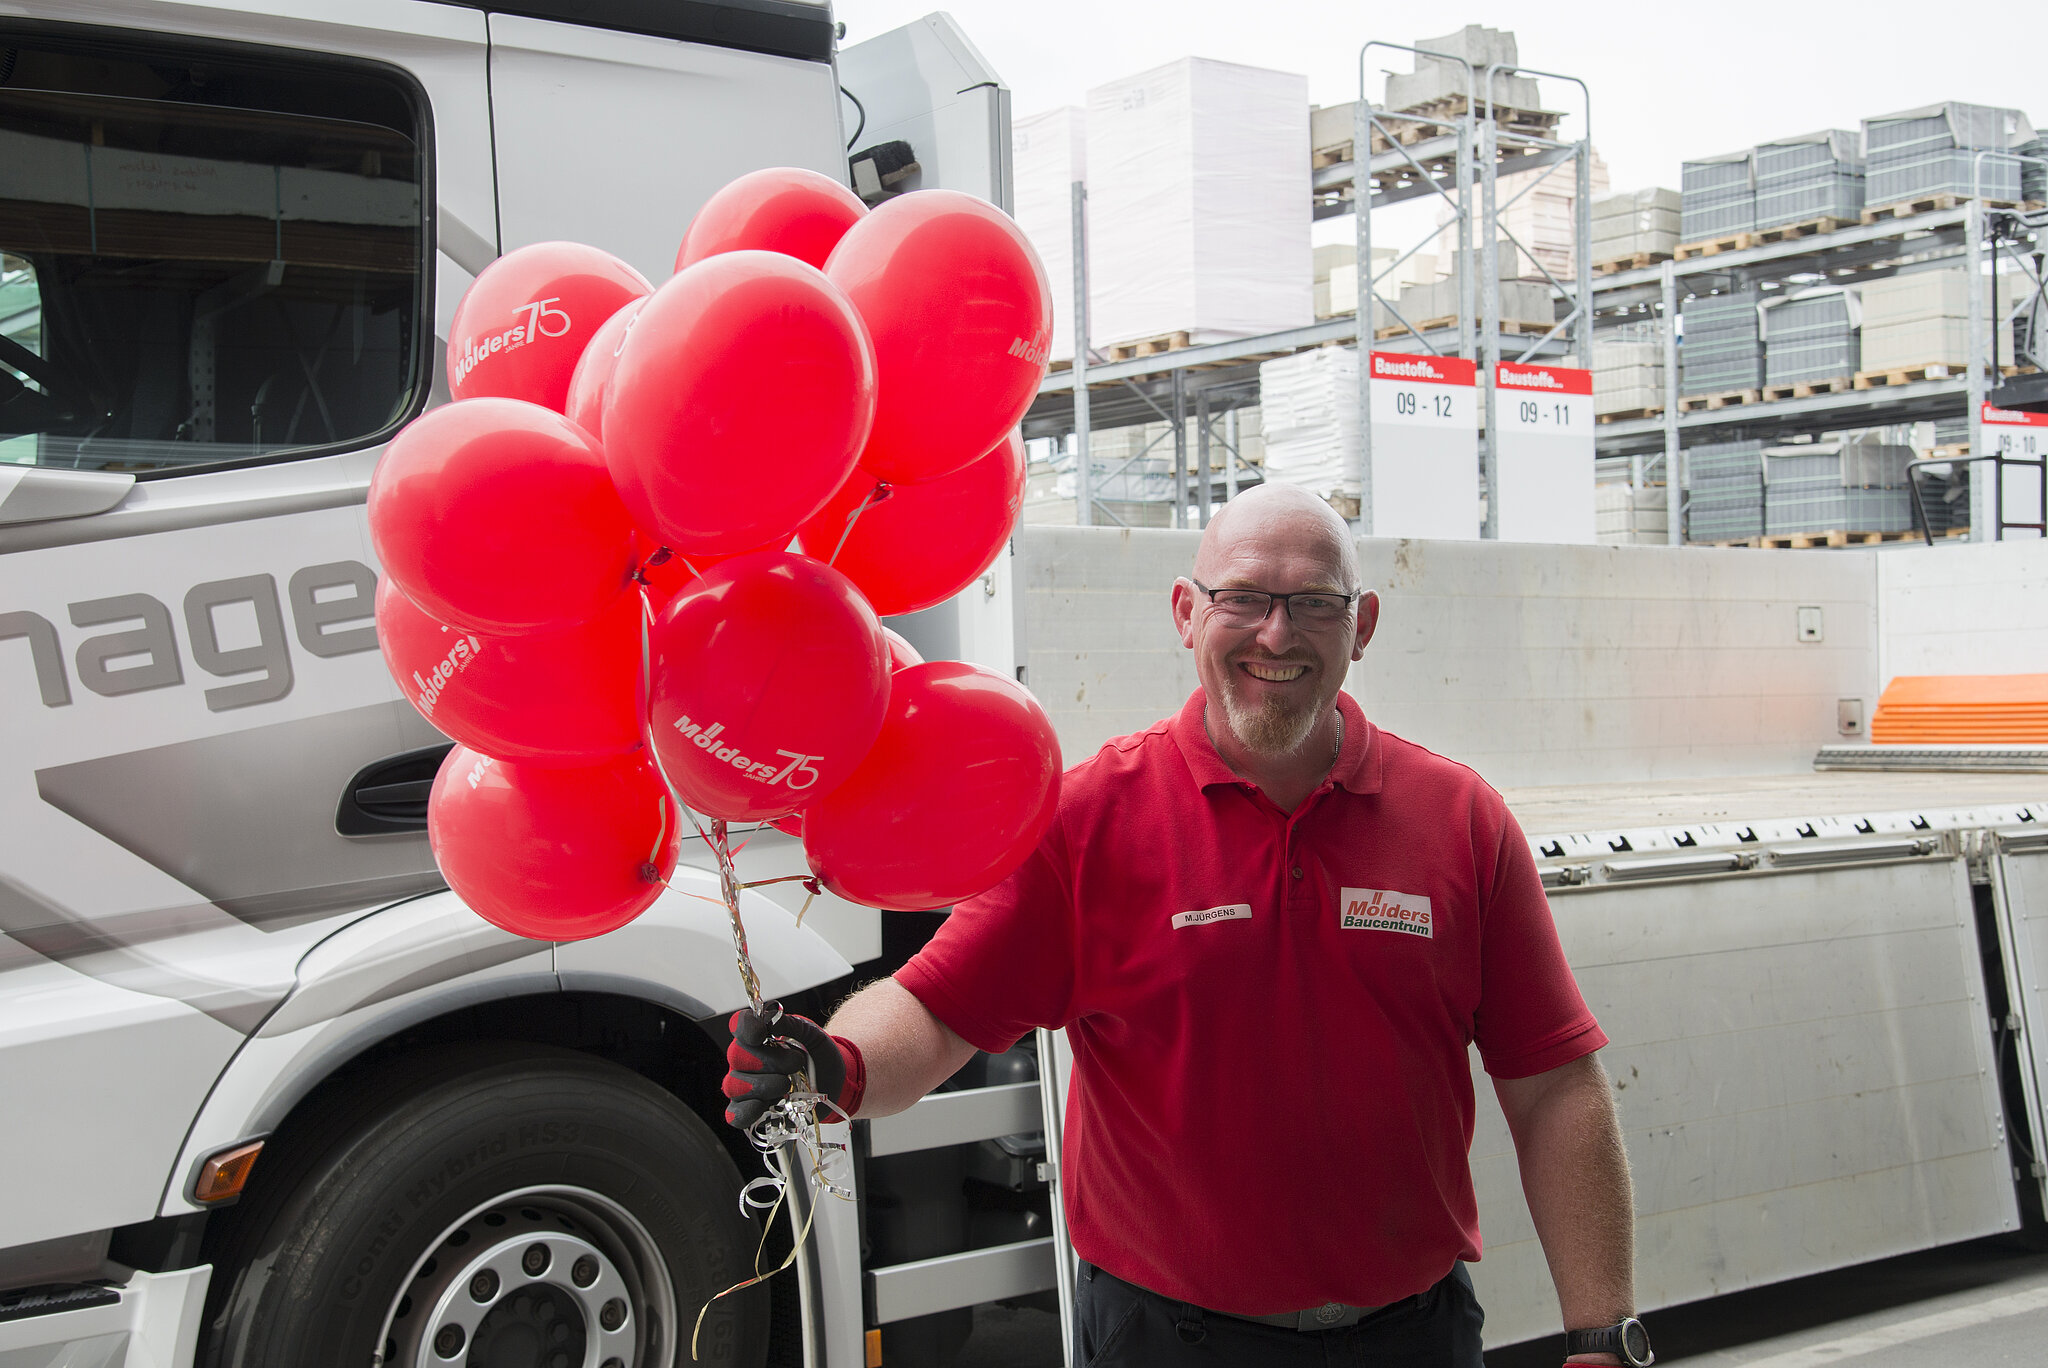 Lagermitarbeiter hält rote Luftballons in der Hand